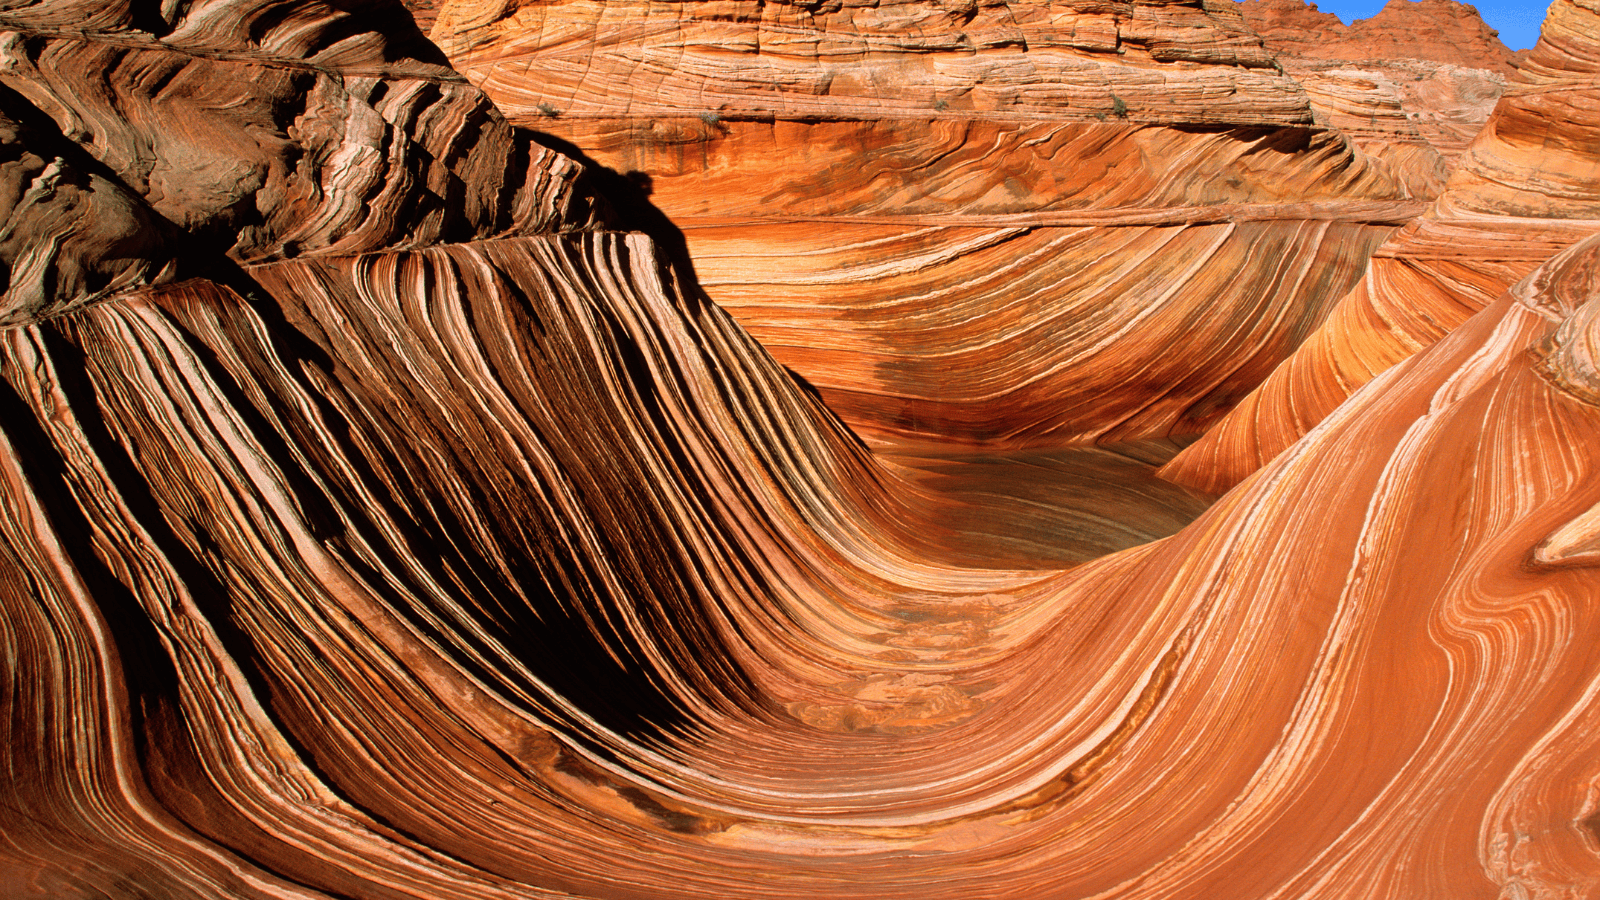 Vermilion Cliffs National Monument Arizona